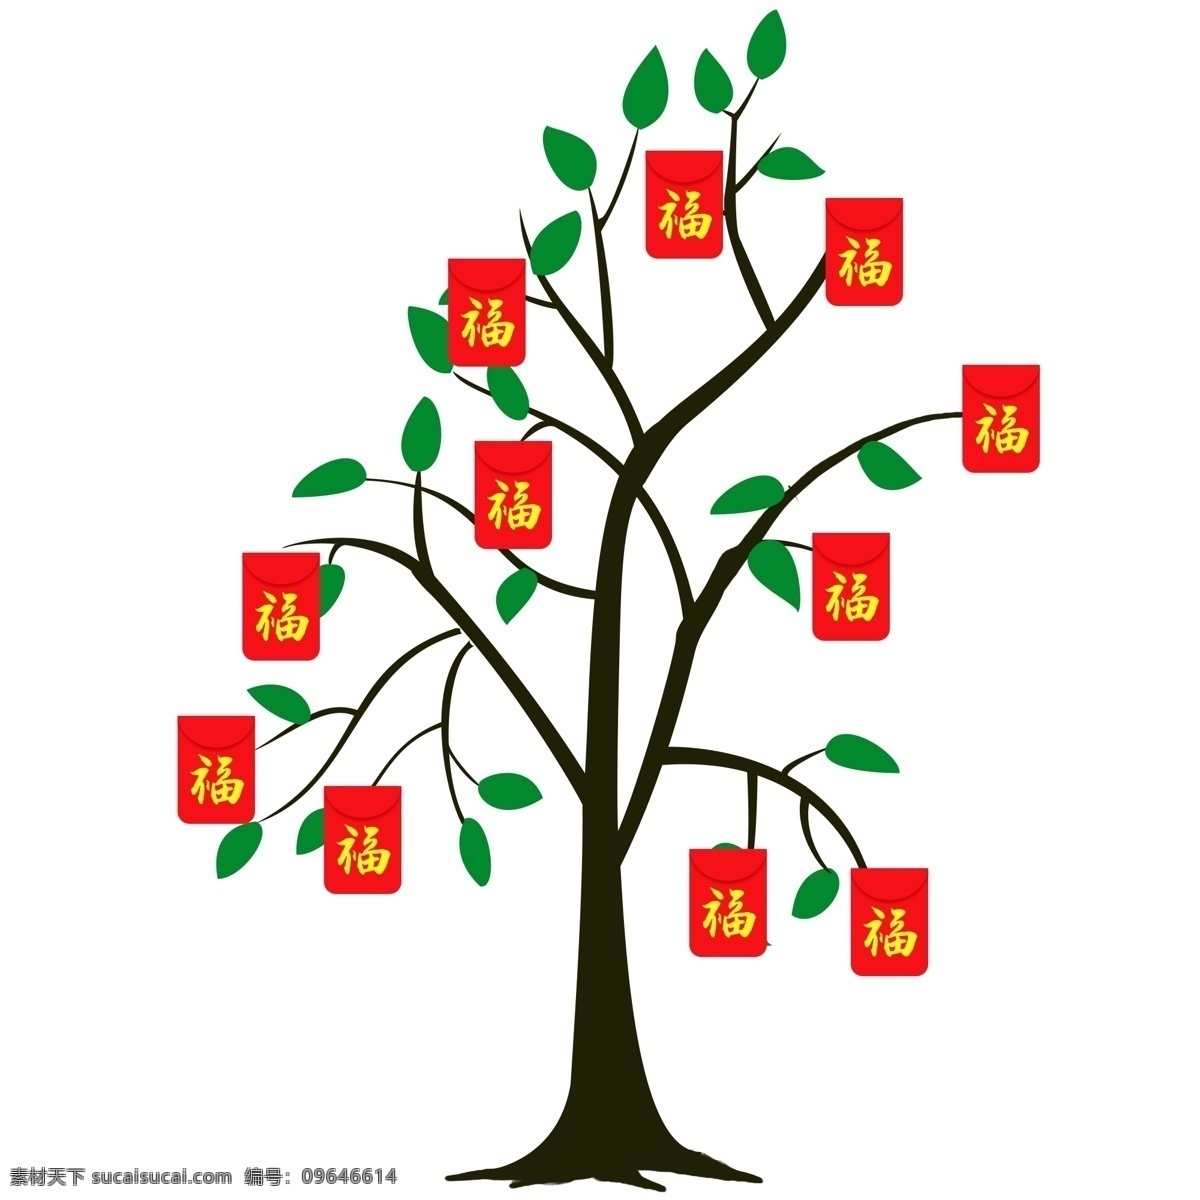 新年 大树 红包 过年 树枝 好运 红色 绿叶 叶子 插画 手绘 祝福 财源滚滚 枝丫